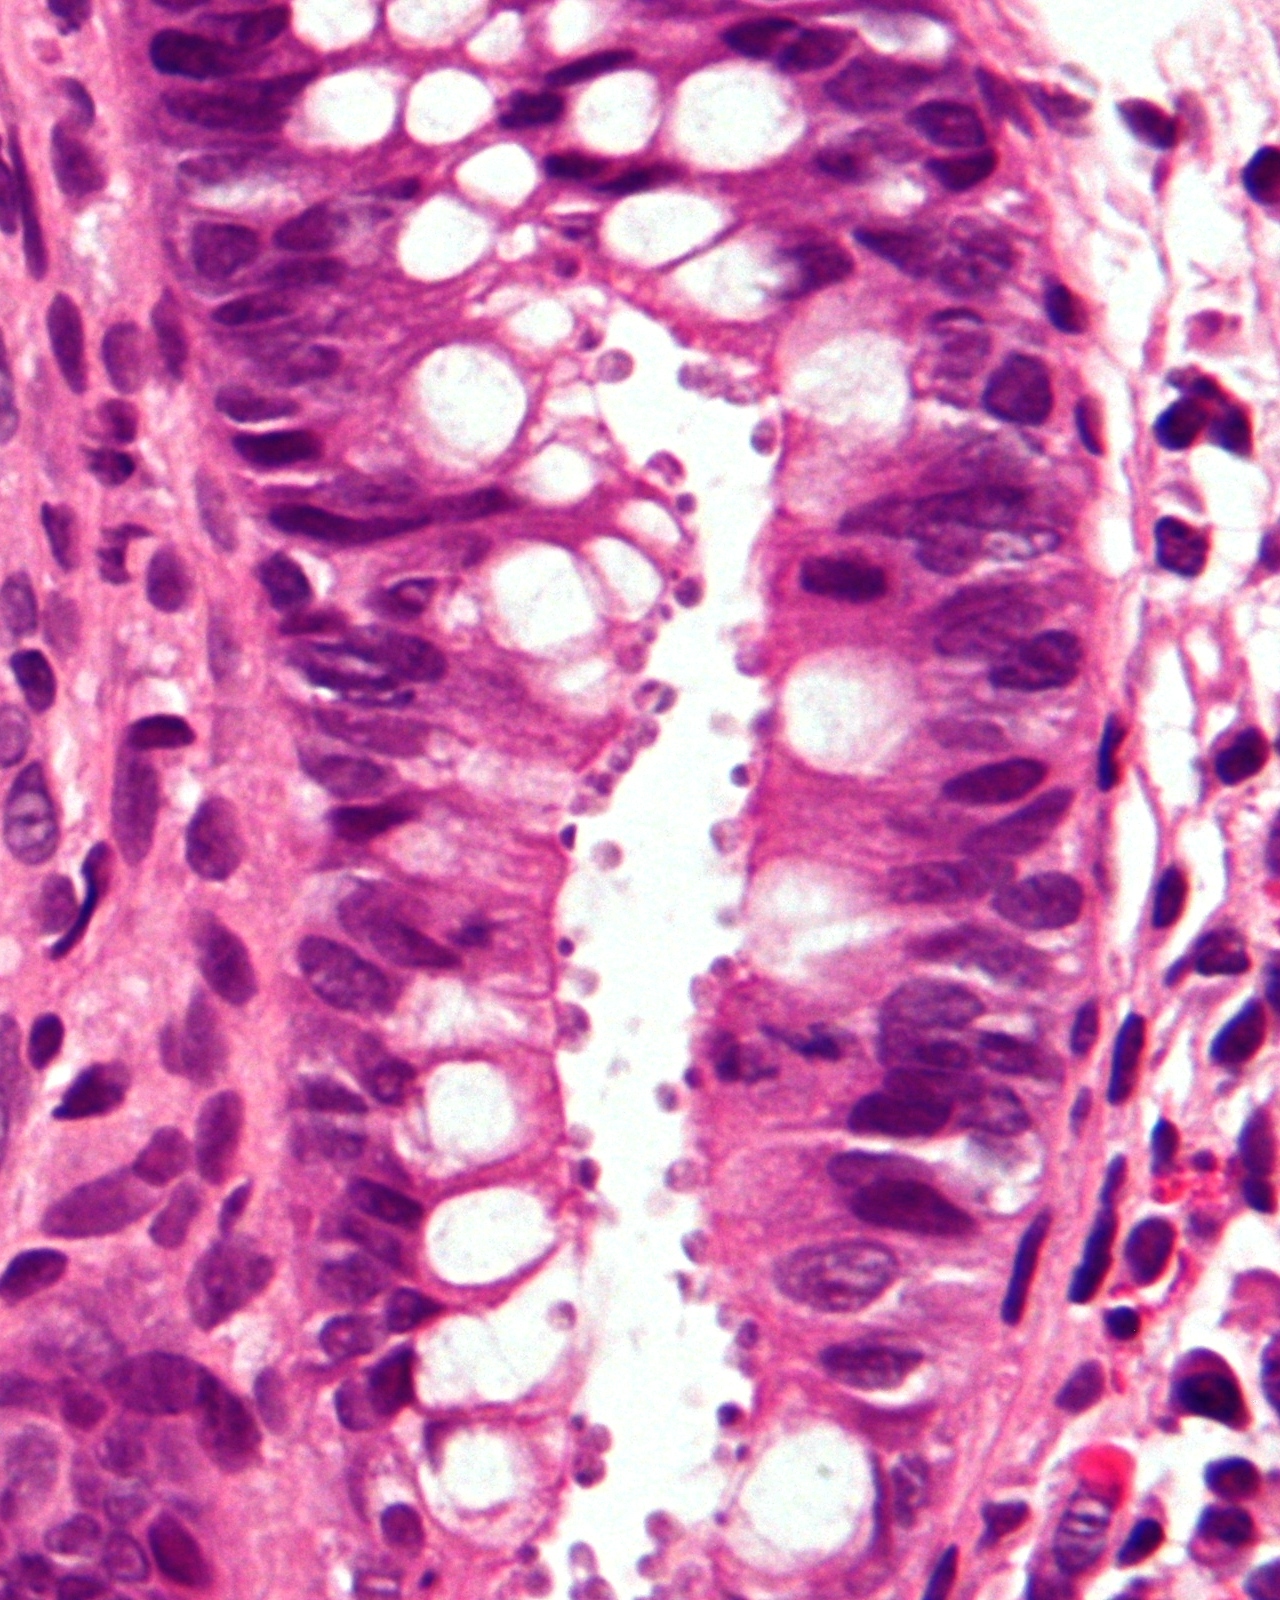 Giardia duodenum histopathology Giardia duodenum histopathology